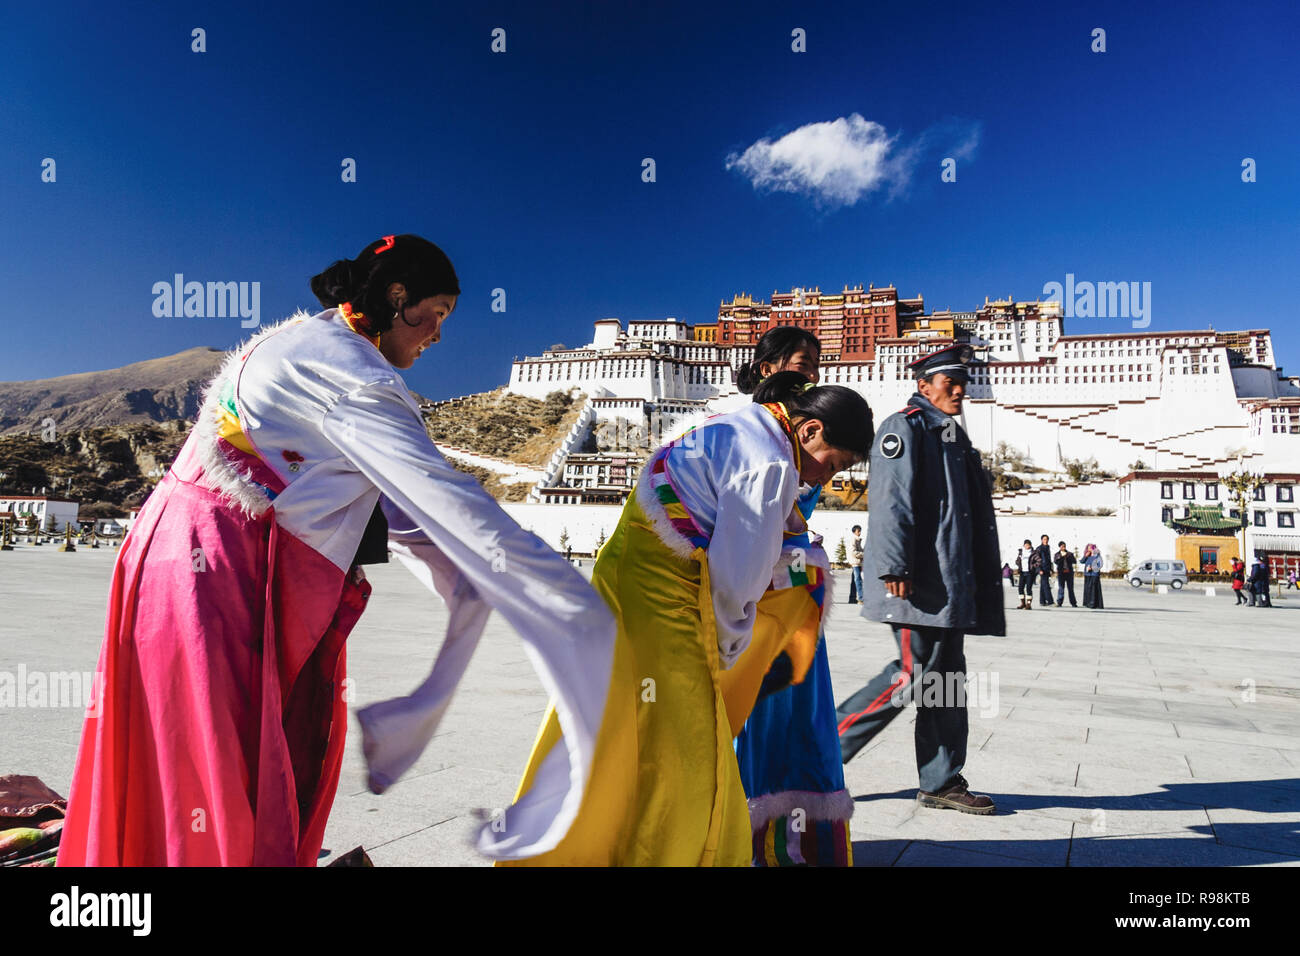 Lhasa, regione autonoma del Tibet, Cina : un poliziotto cinese passeggiate negli ultimi tre donne tibetane provando costumi tradizionali accanto al palazzo del Potala. L'abete Foto Stock